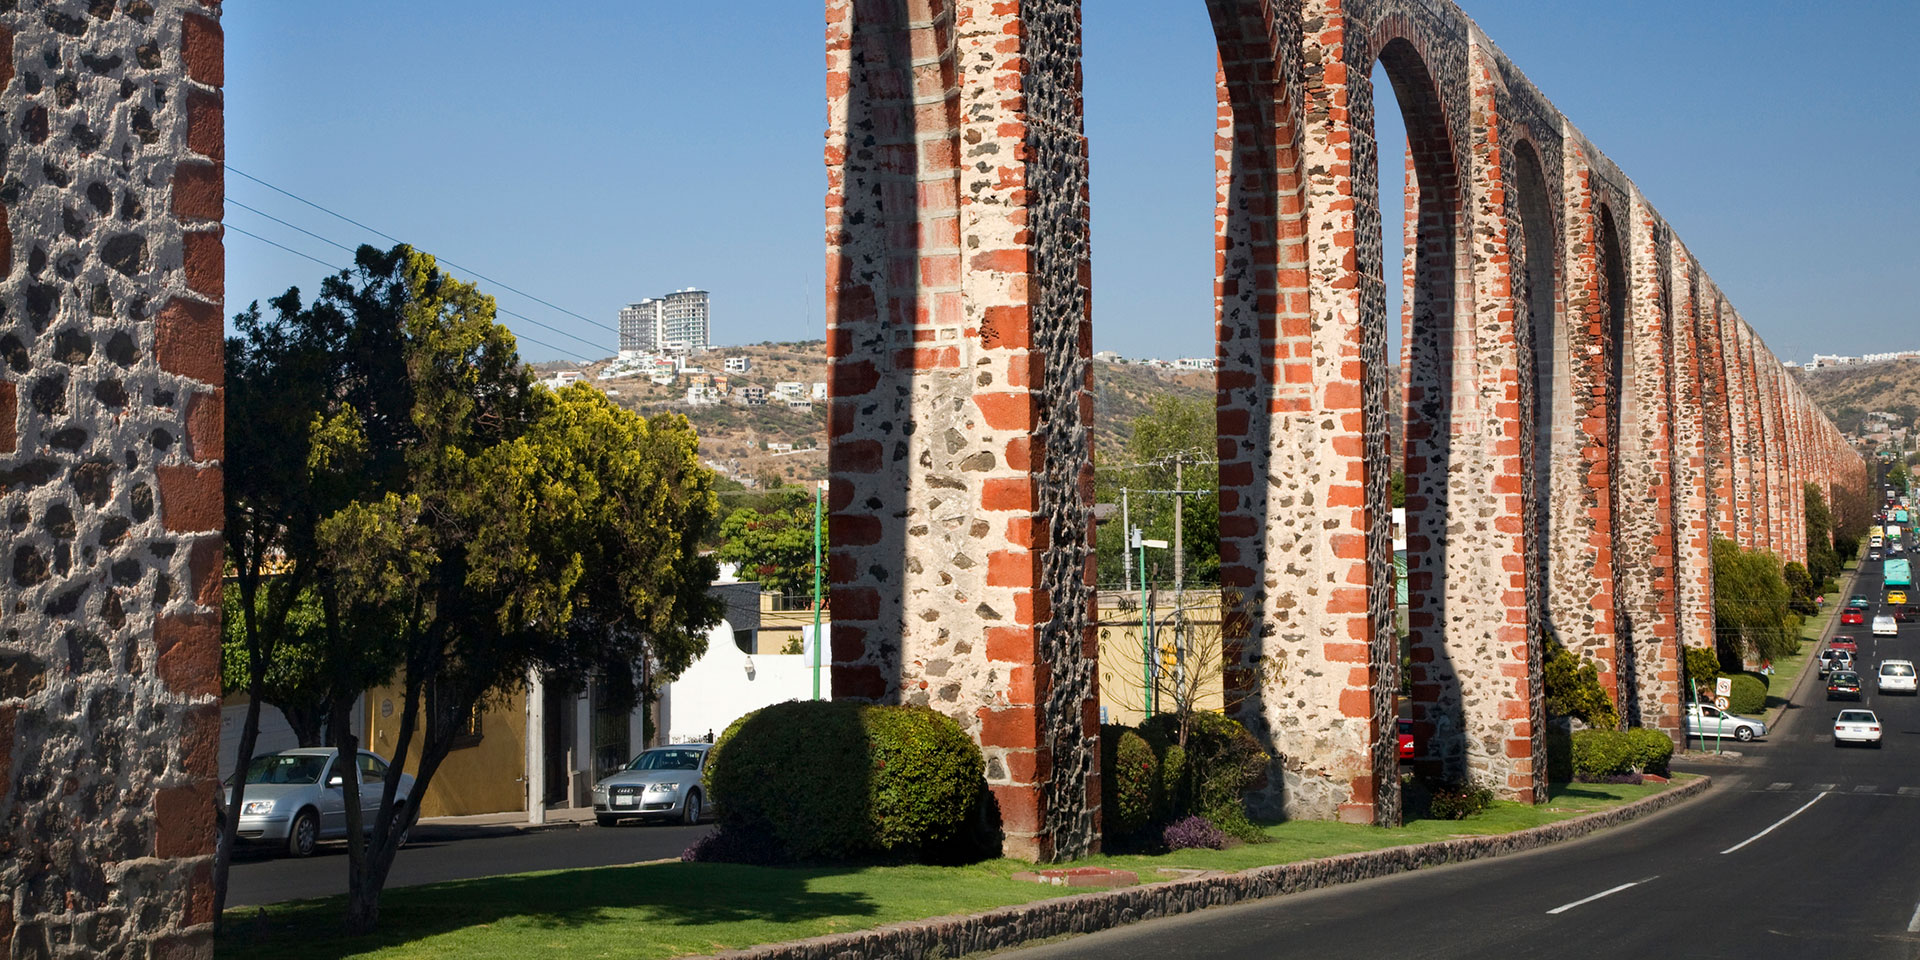 Edificios y monumentos históricos de Querétaro | Marriott